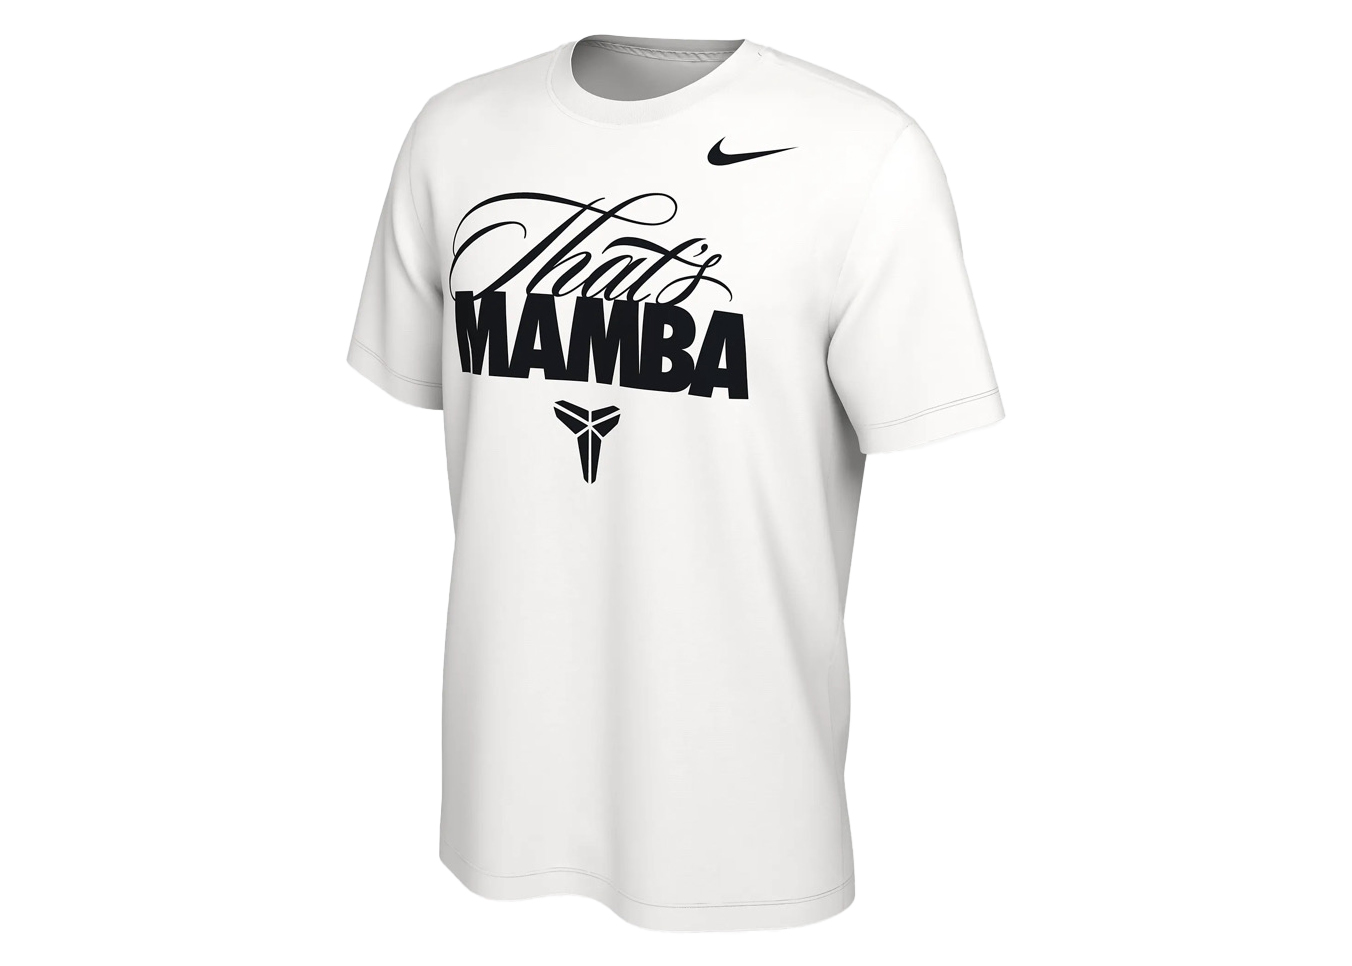 Nike Kobe Bryant Mamba T-shirt White